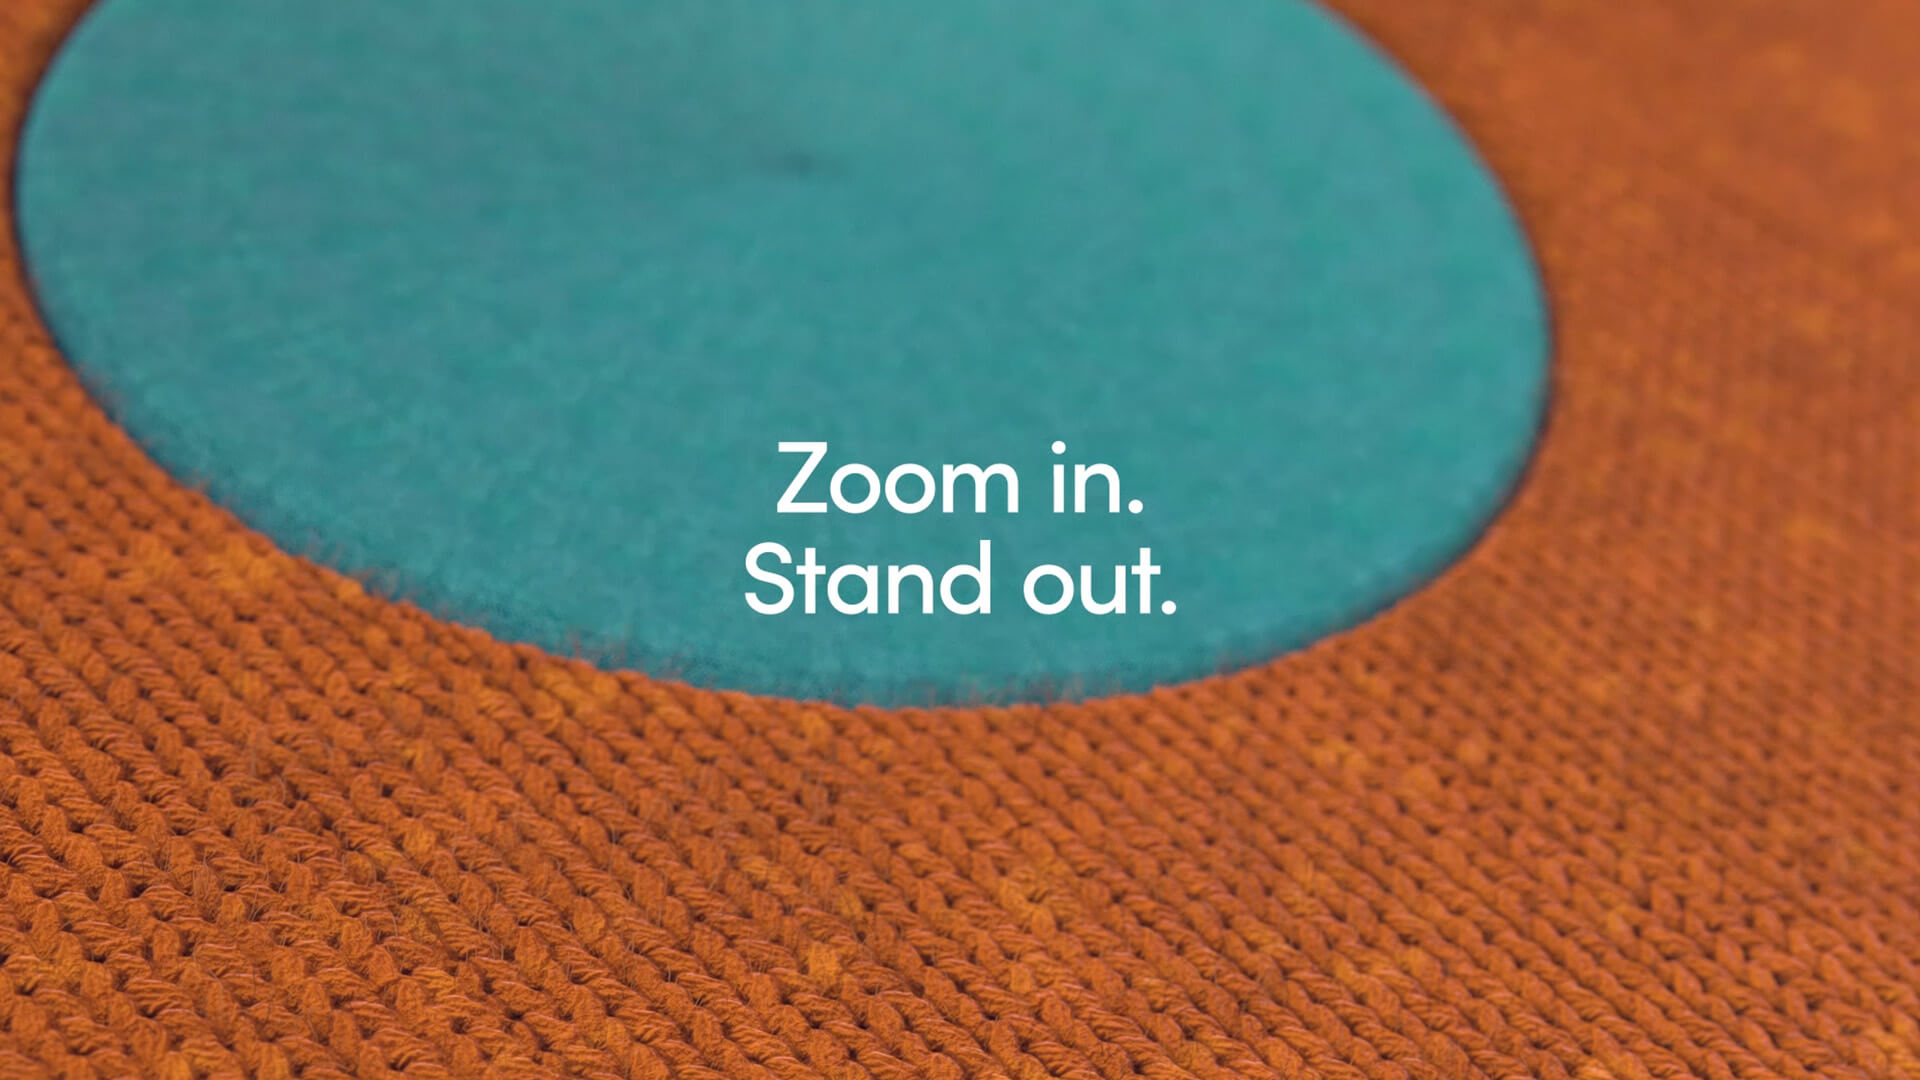 Afbeelding uit de motion graphic: een grove oranje kleurige structuur en een fijnere blauwe structuur met de tekst "Zoom in. Stand out."